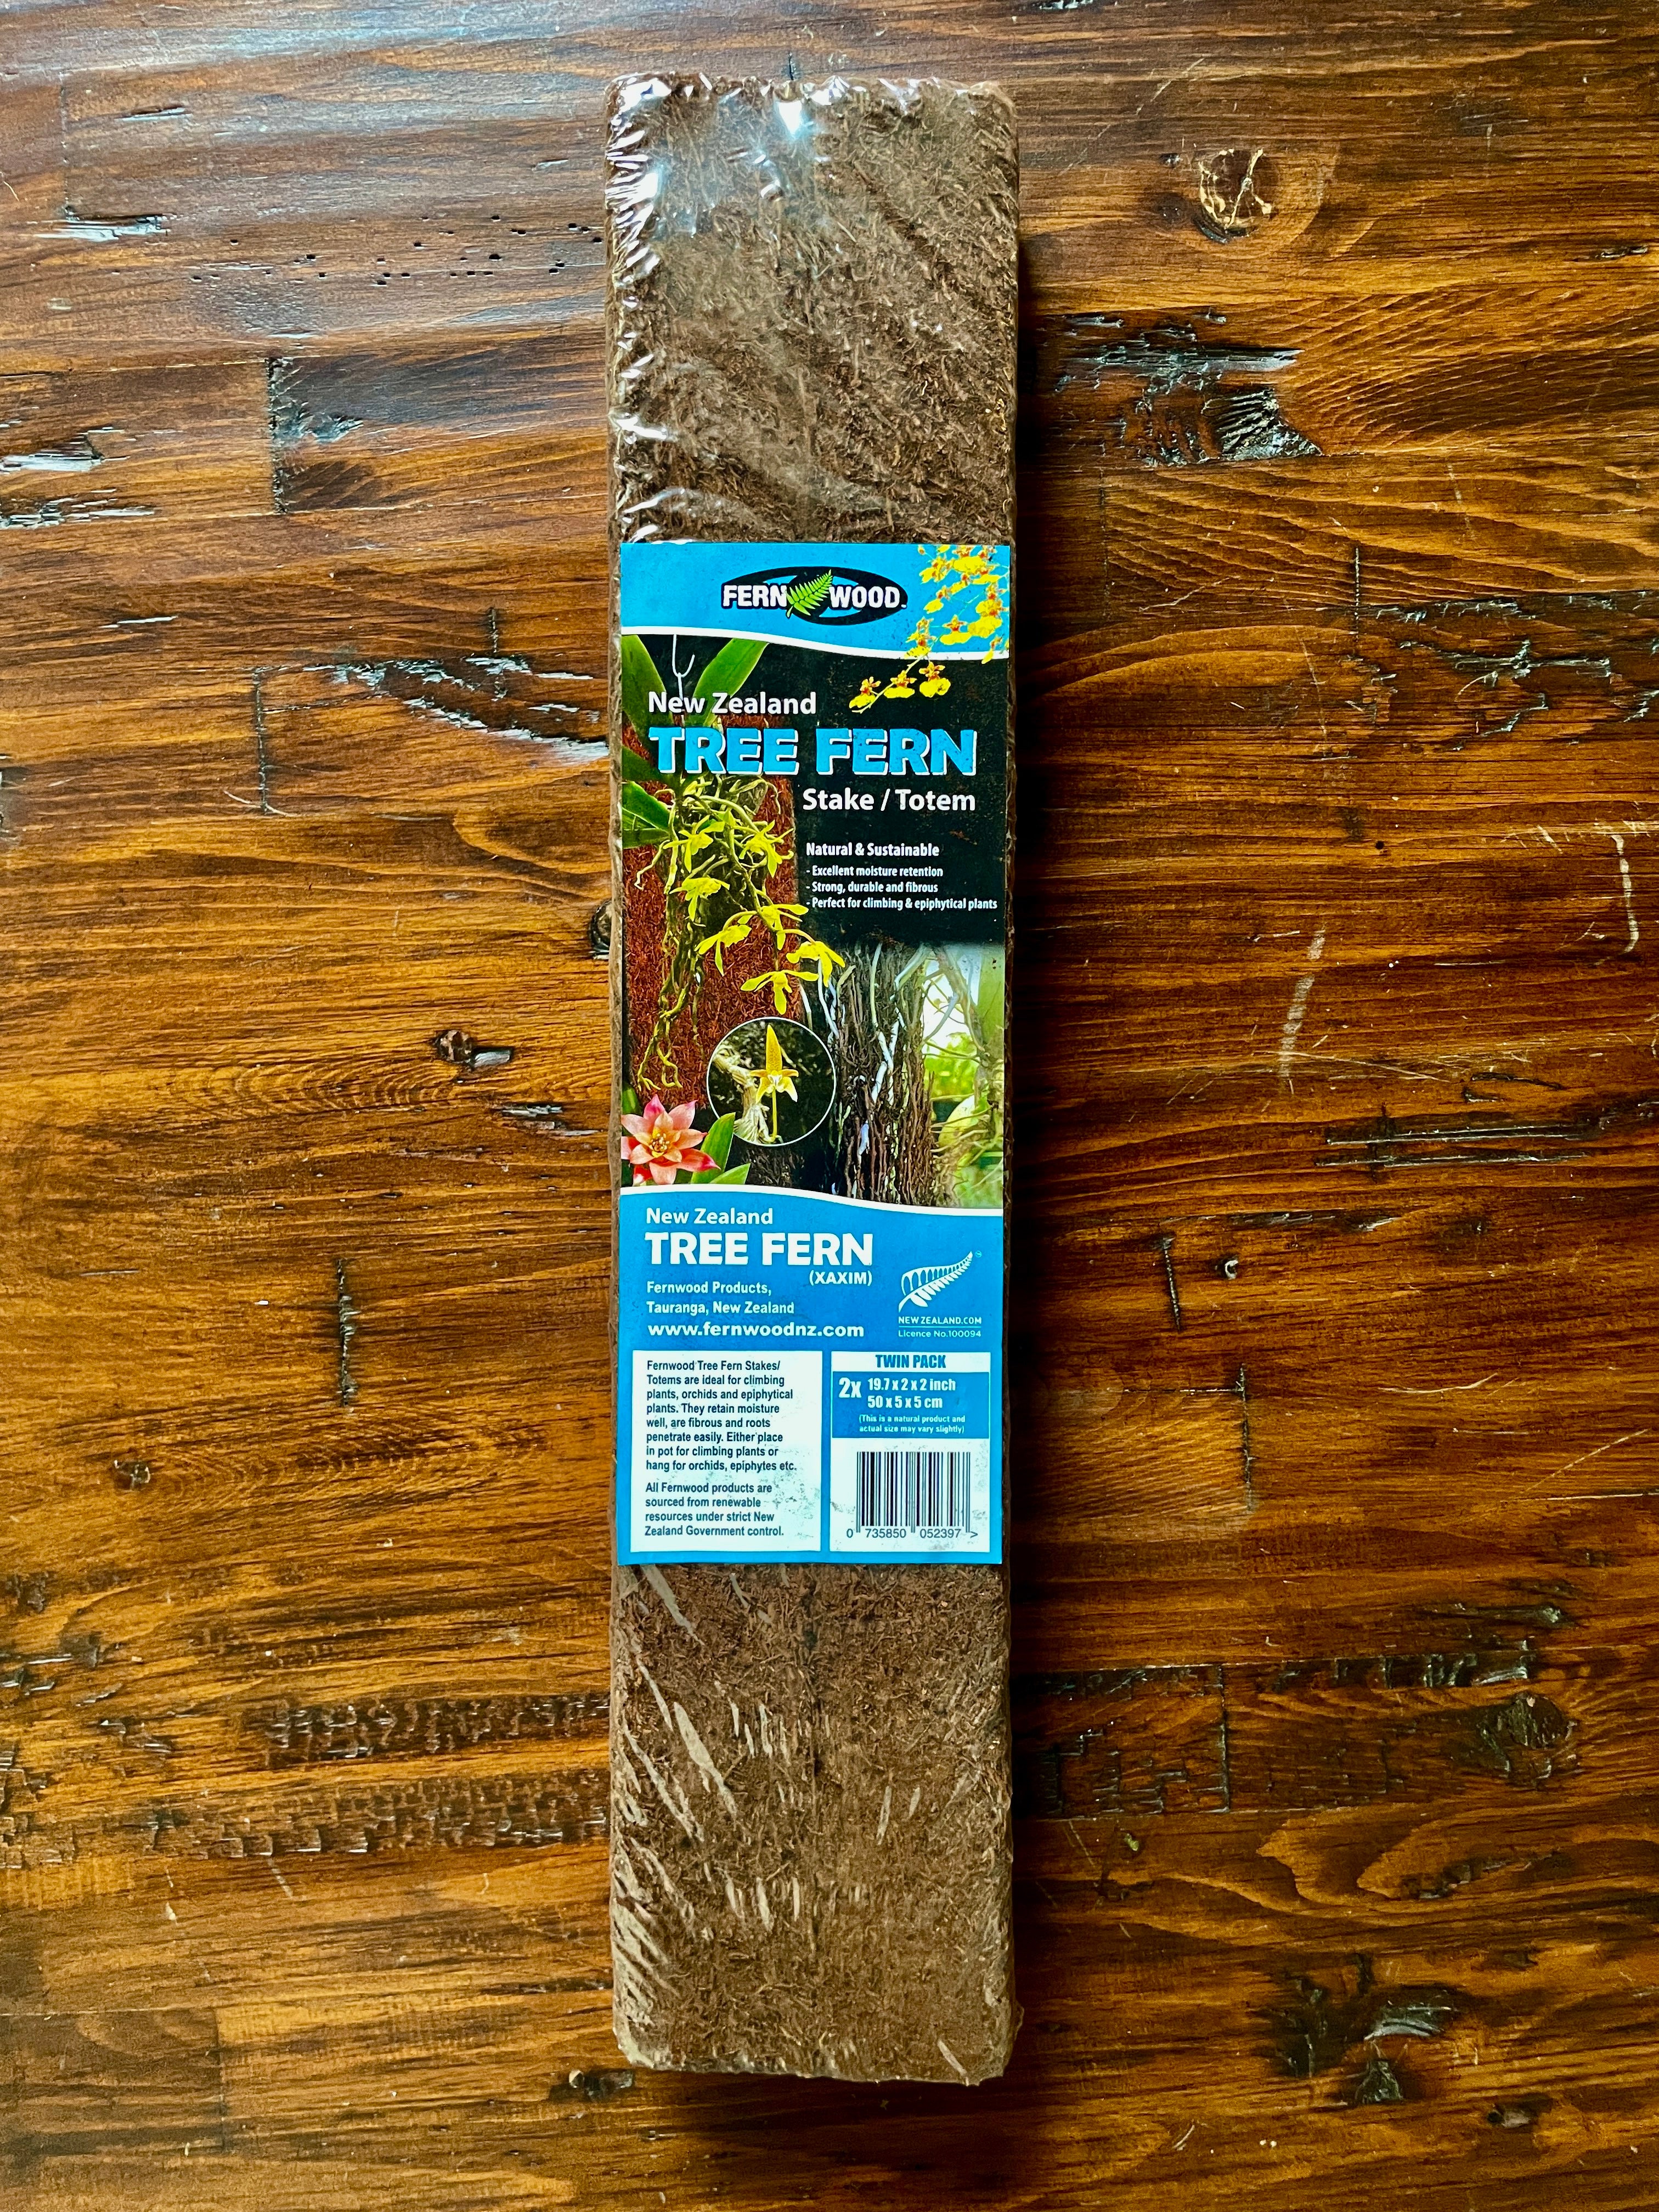 Tree Fern Stake/Totem - New Zealand 19.7 x 2 x 2 Inch